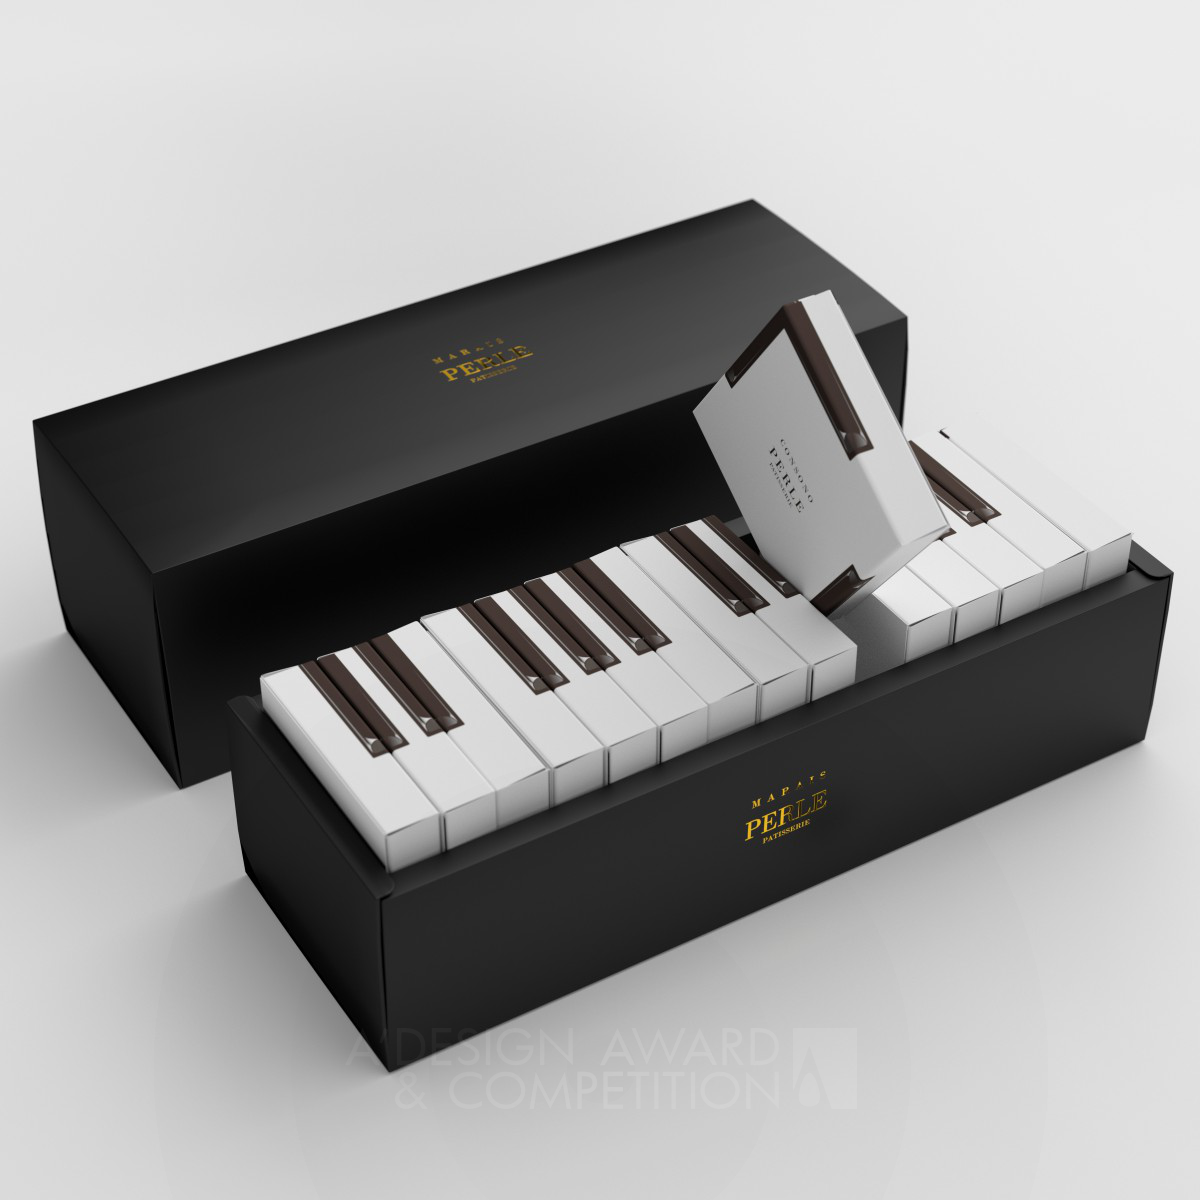 Marais Piano cake packaging